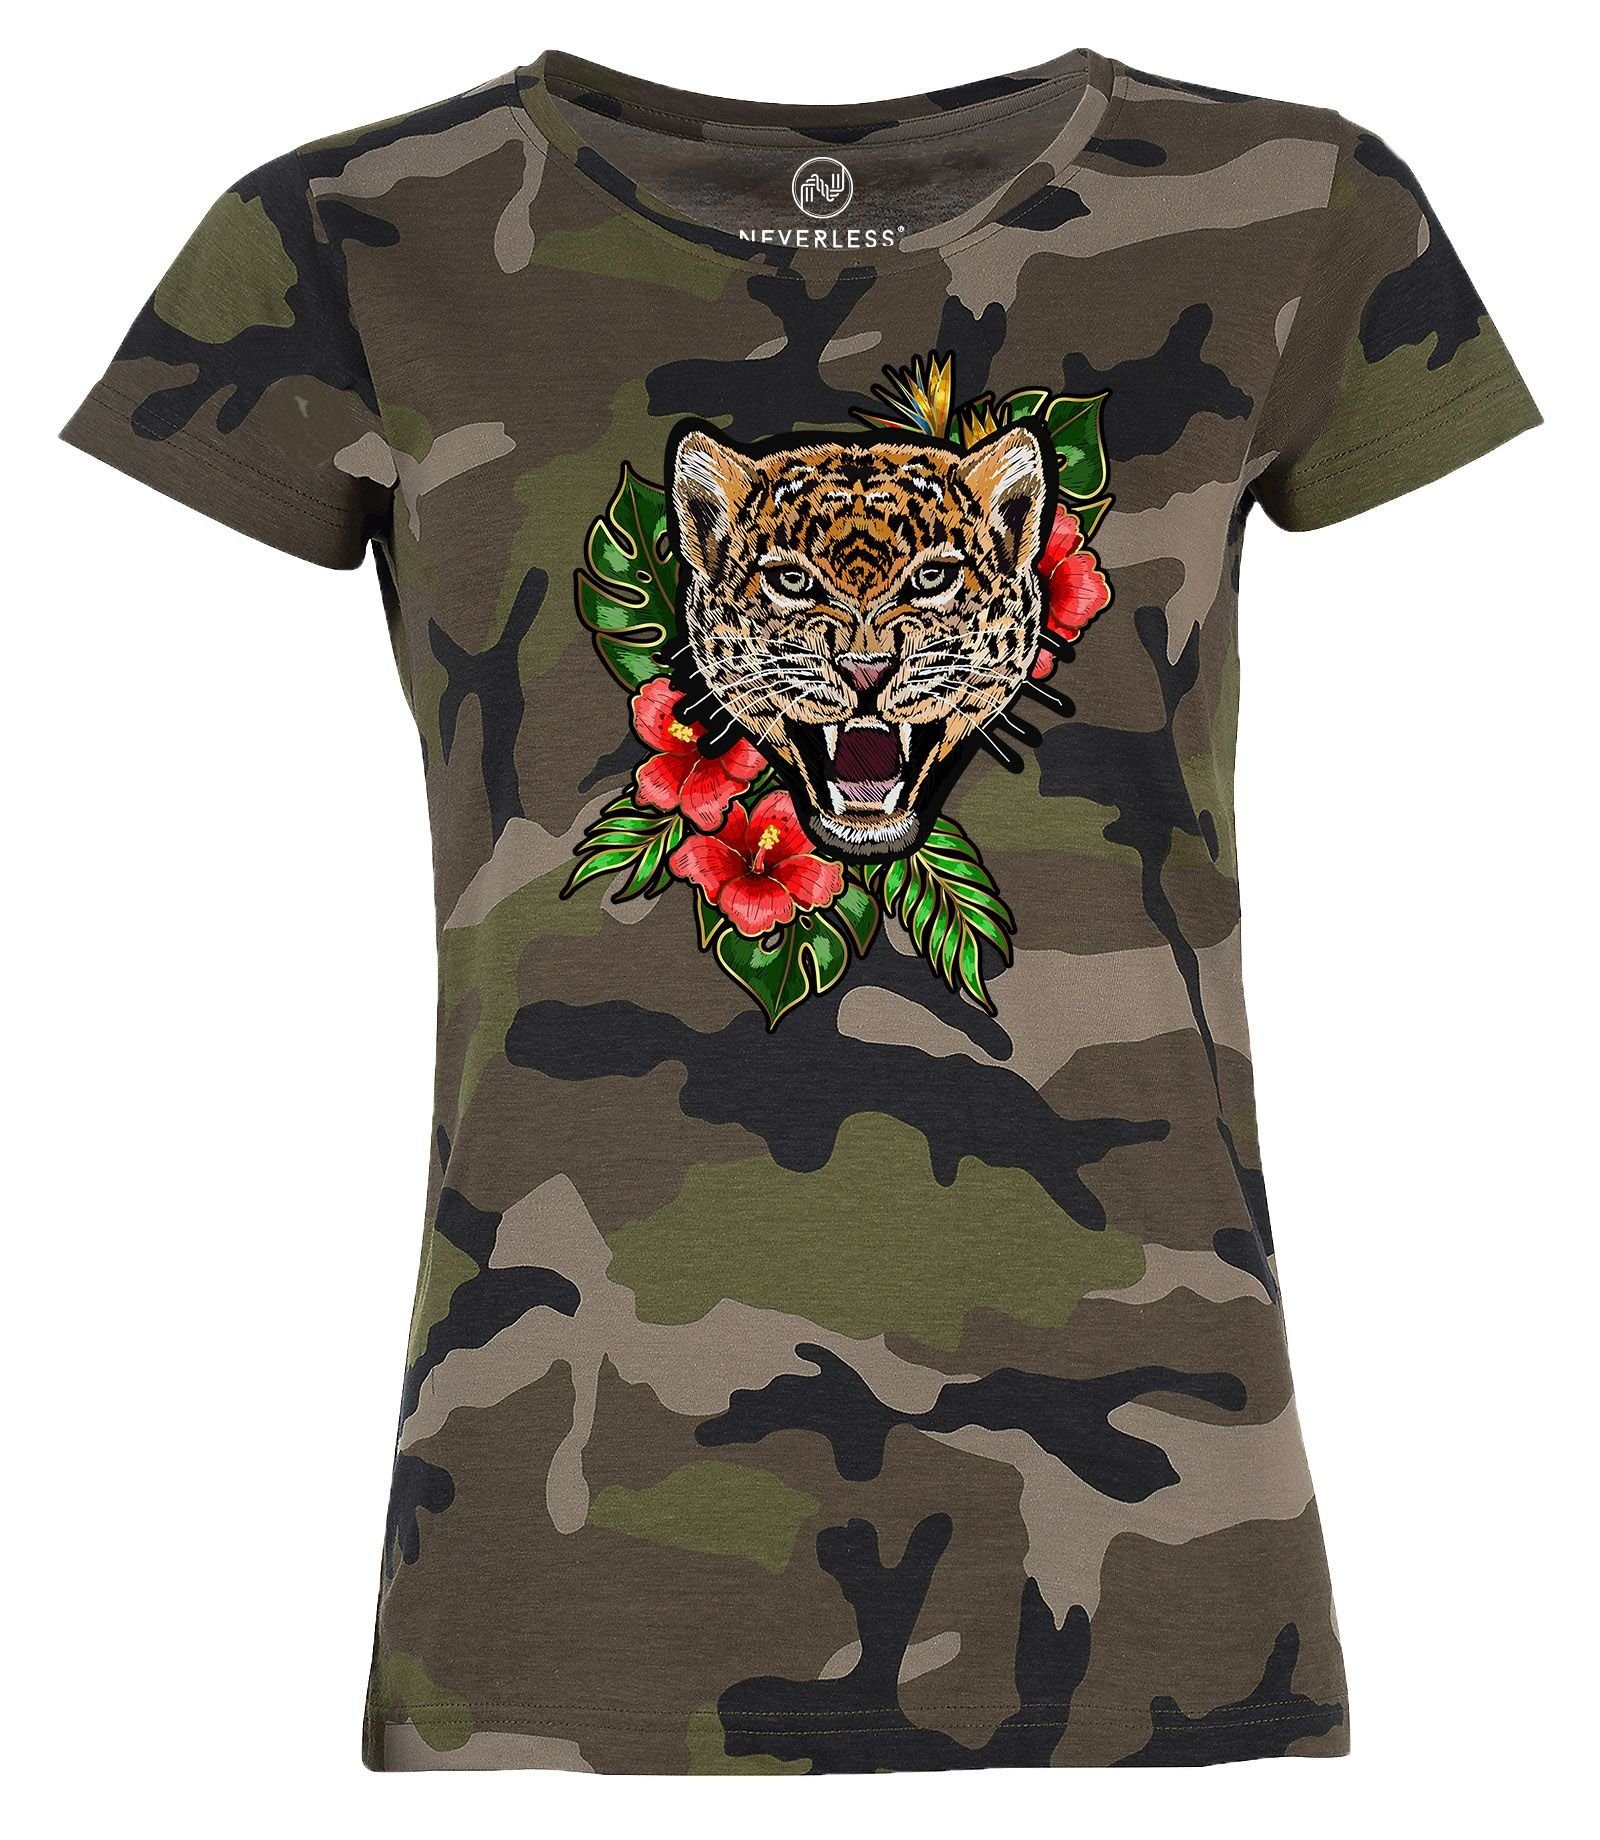 Neverless Print-Shirt »Damen T-Shirt Camouflage Camo-Shirt Tiger Tropical  Palmblätter Sommer Stick-Patch-Optik Tarnmuster Neverless®« mit Print